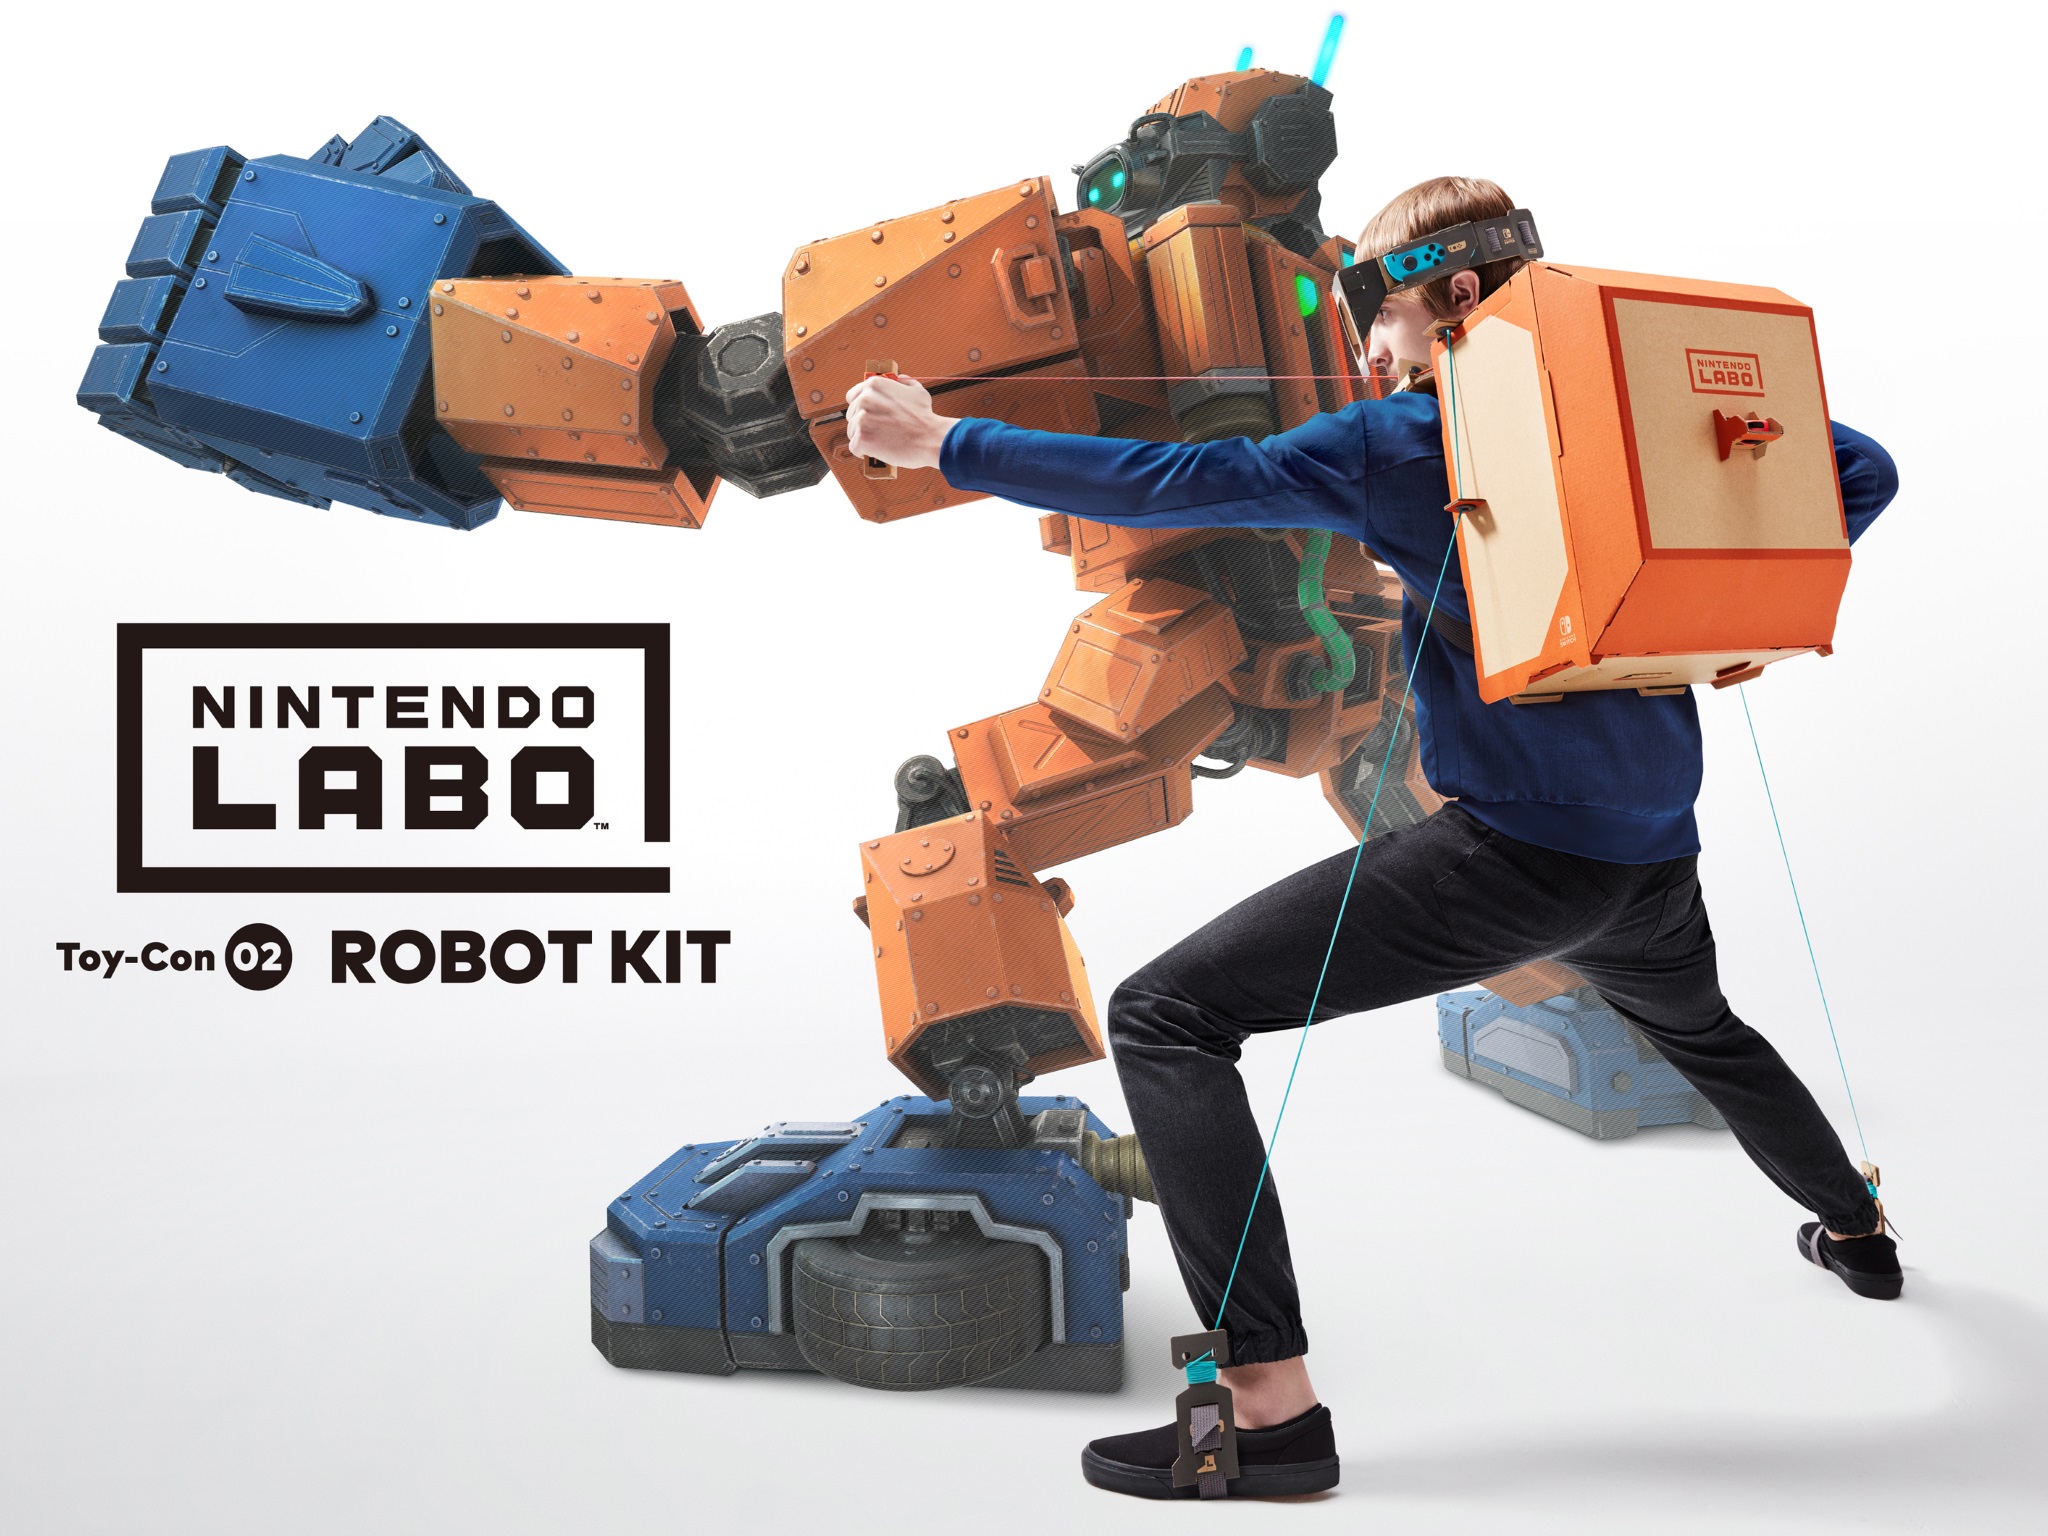 Nintendo robot kit